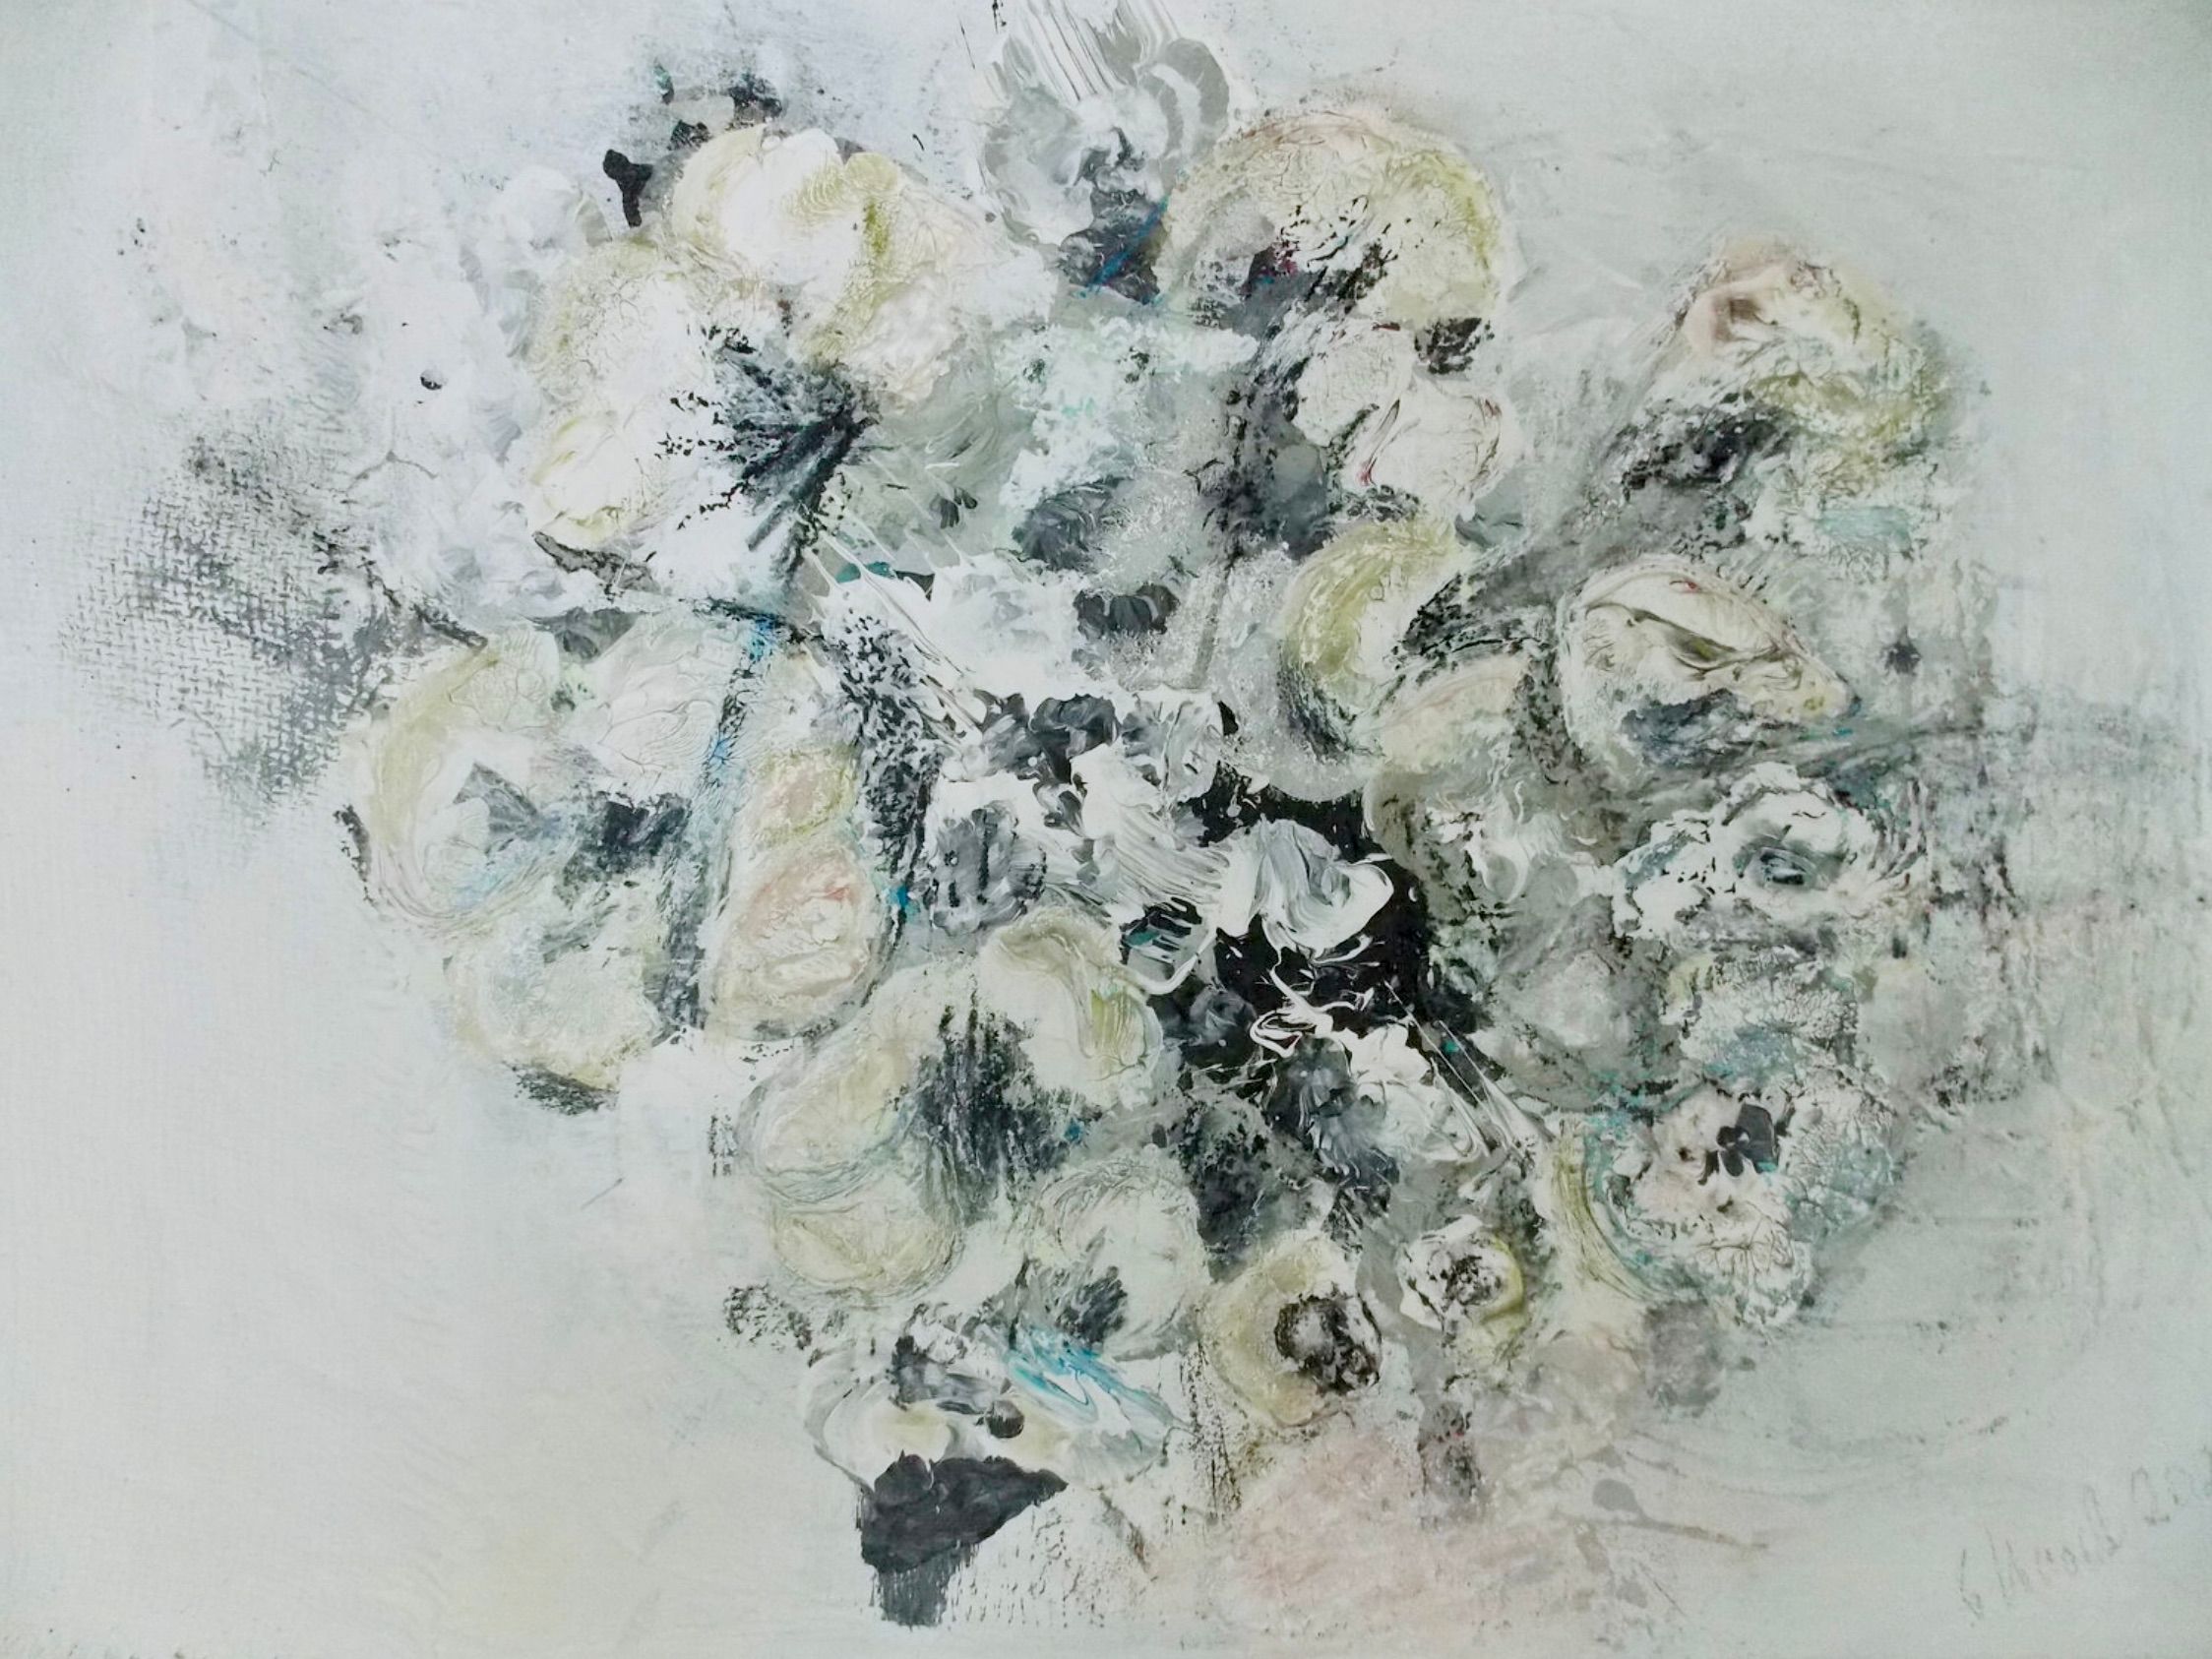 在克里斯塔-哈克的 "Im Rausch der Blumen 2 "表现主义抽象花卉画中，白色、米色、绿色和黑色占主导地位。